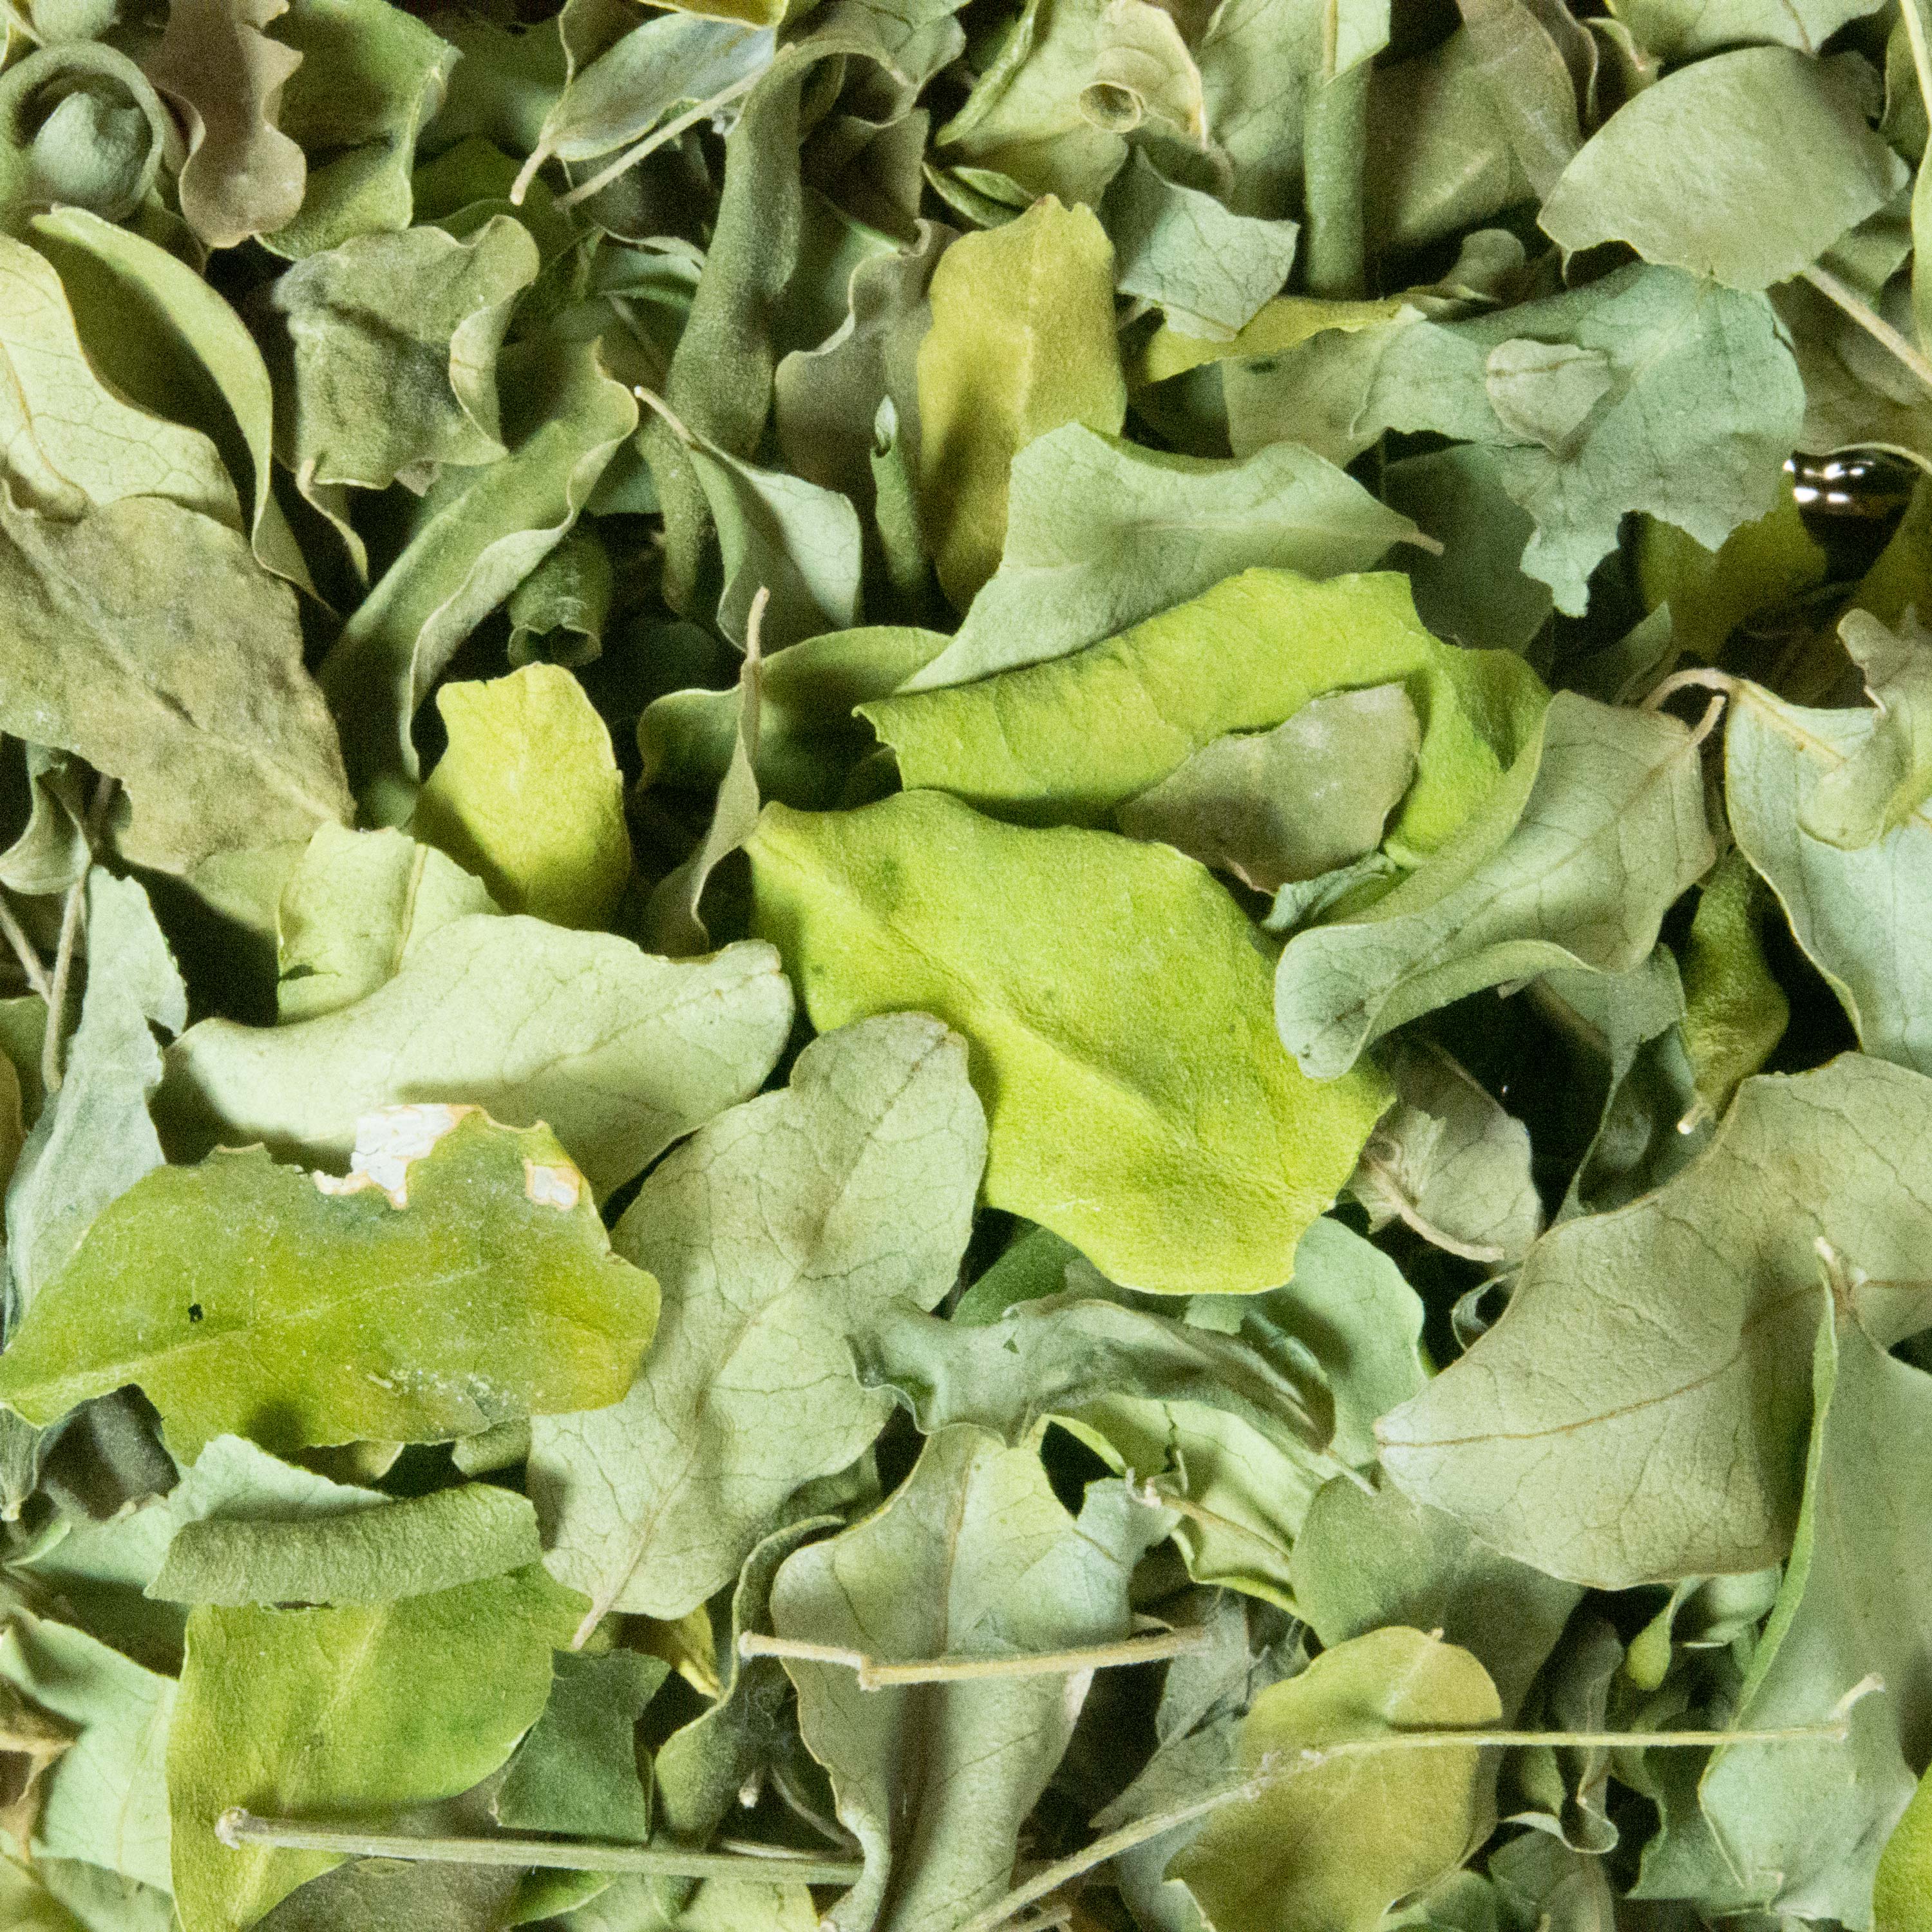 Moringa leaves dried